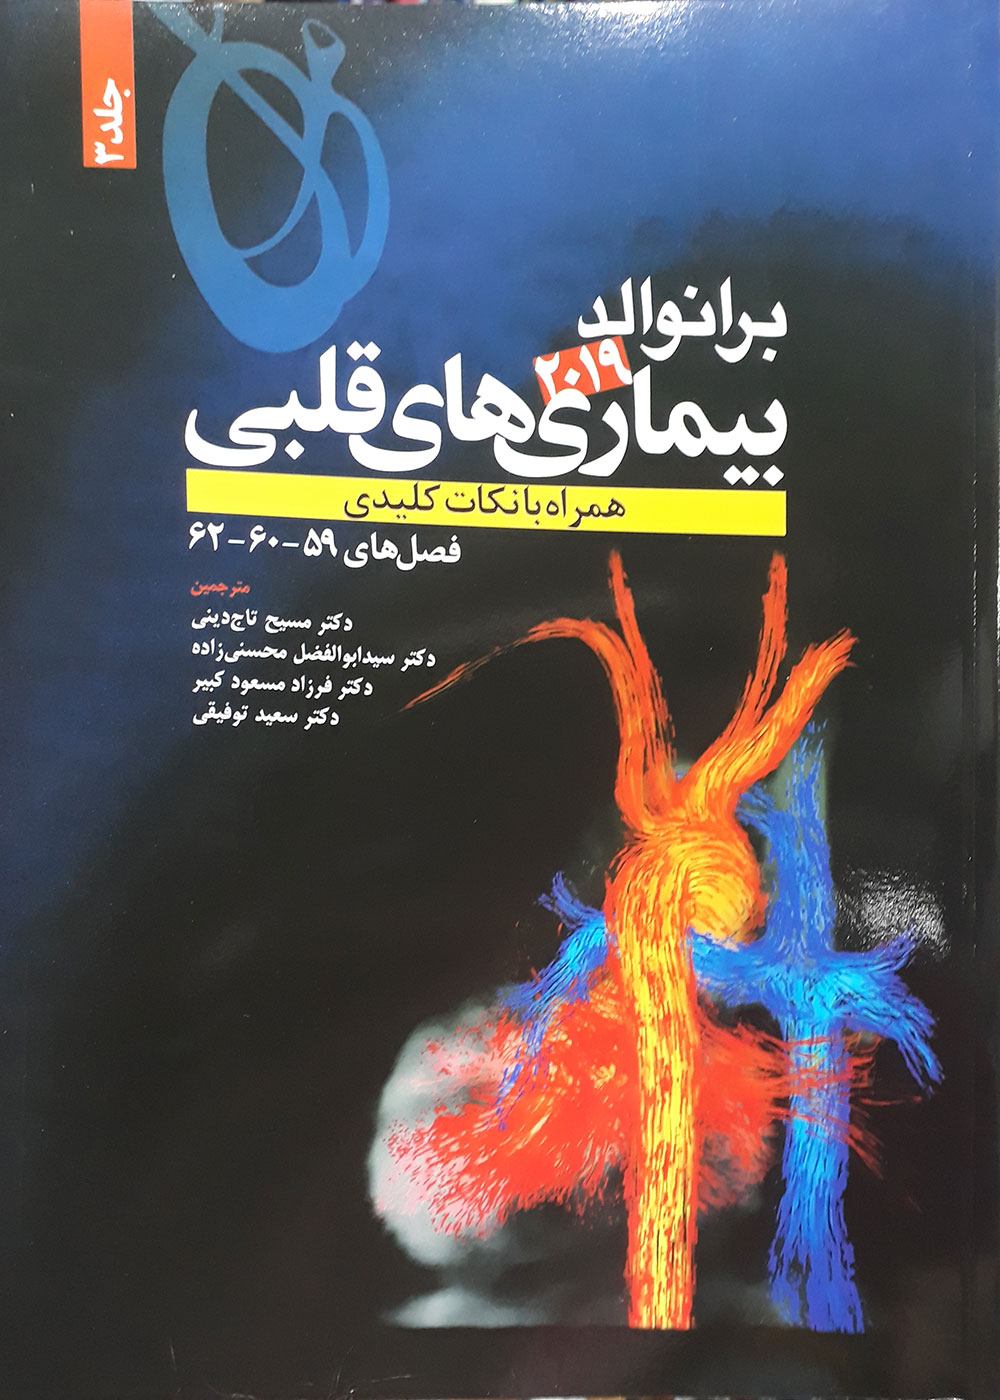 کتاب بیماری های قلبی برانوالد 2019 همراه با نکات کلیدی جلد 3-مترجم دکتر مسیح تاج دینی و دیگران 